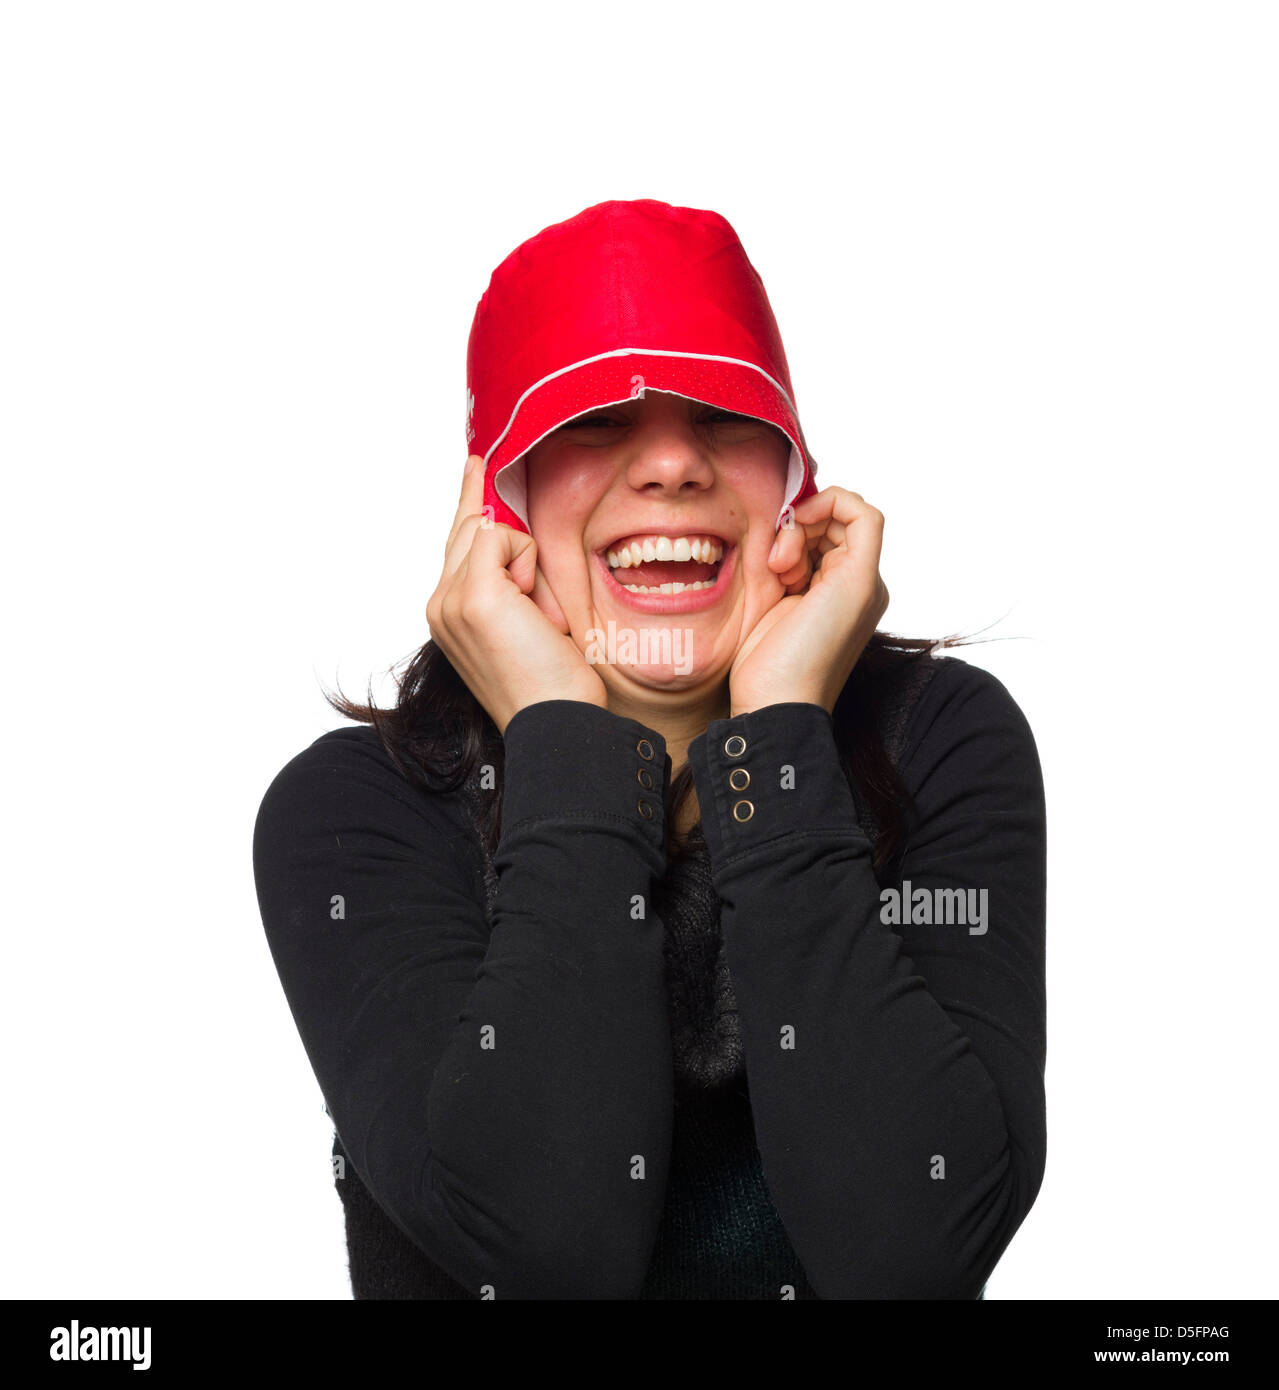 Pippo ritratto di una donna che indossa un cappello rosso isolato su sfondo bianco Foto Stock